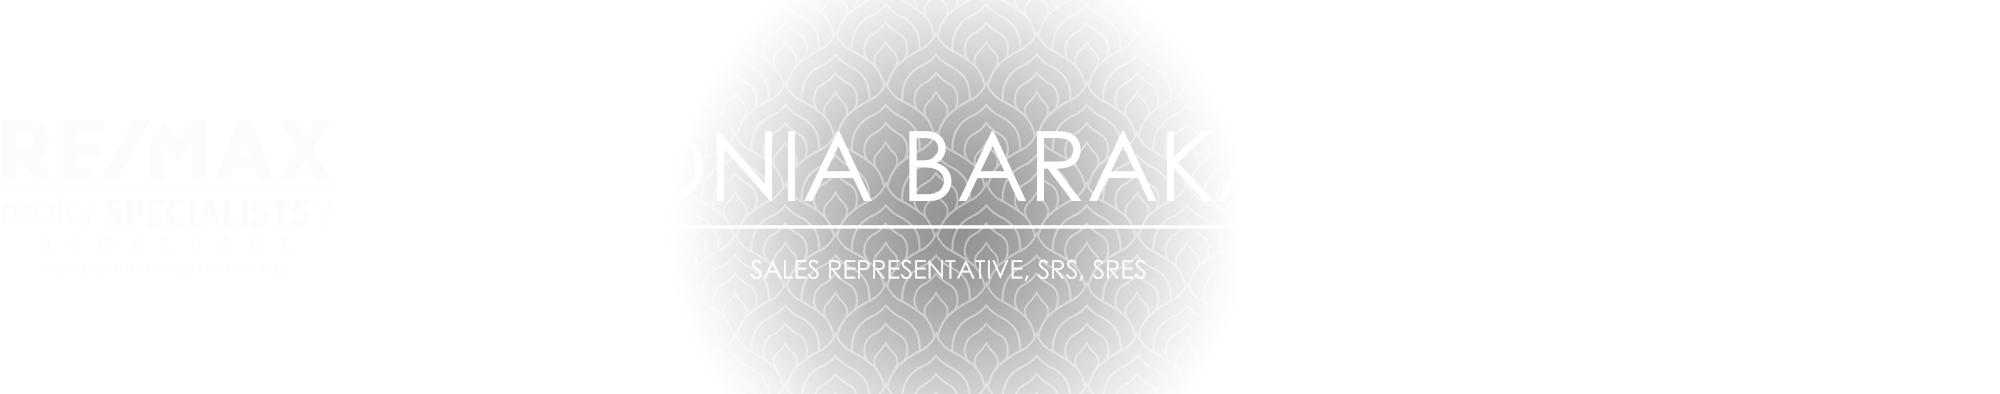 Ronia Barakat Graphic Header